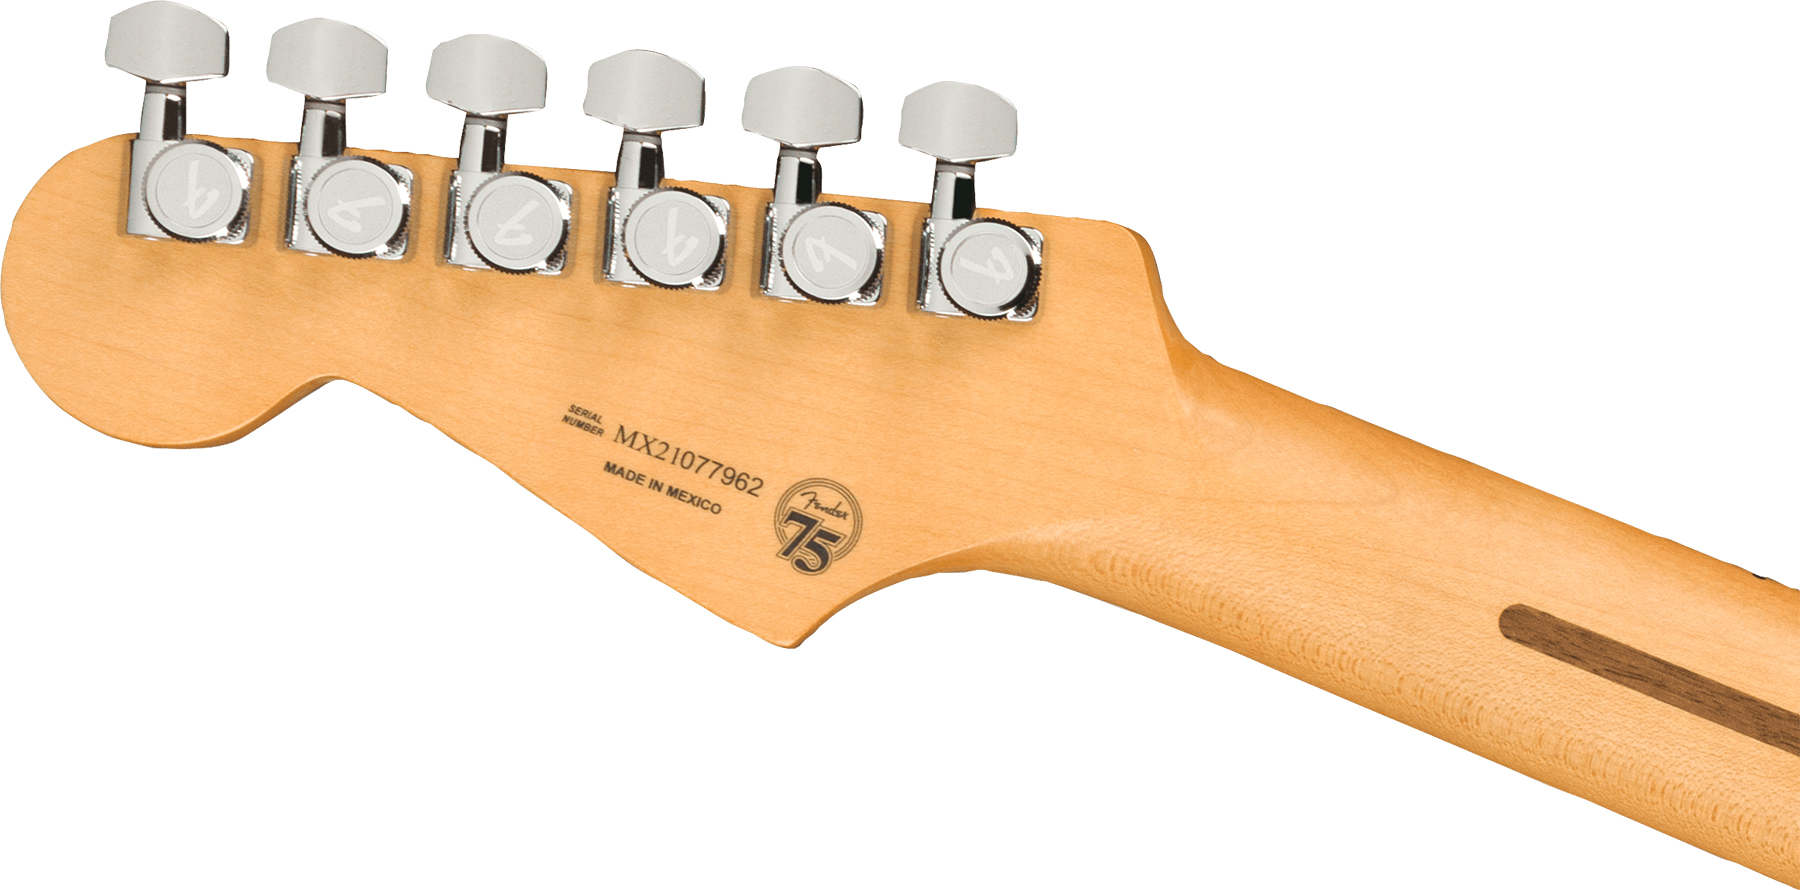 Fender Strat Player Plus Mex Hss Trem Mn - 3-color Sunburst - E-Gitarre in Str-Form - Variation 3